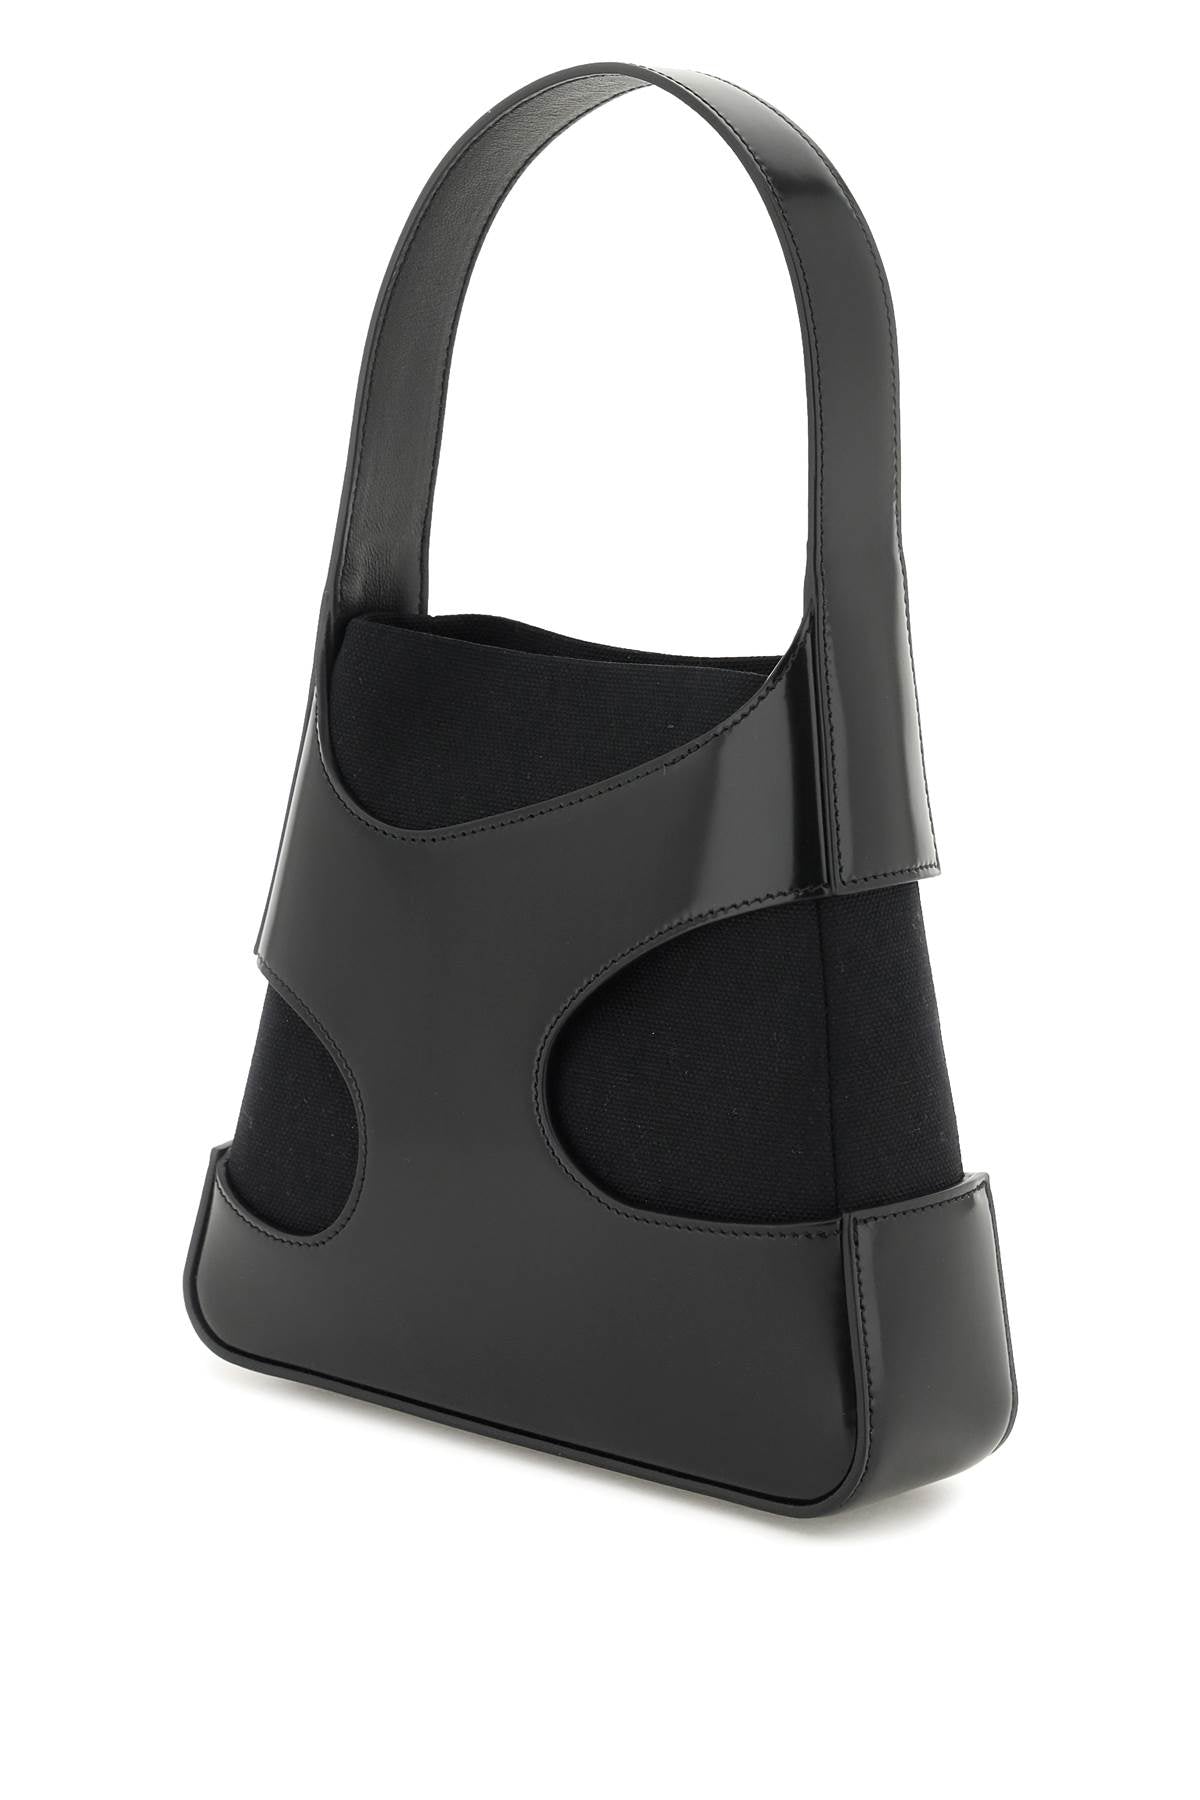 حقيبة يد سوداء من جلد طبيعي بتفاصيل مميزة للنساء